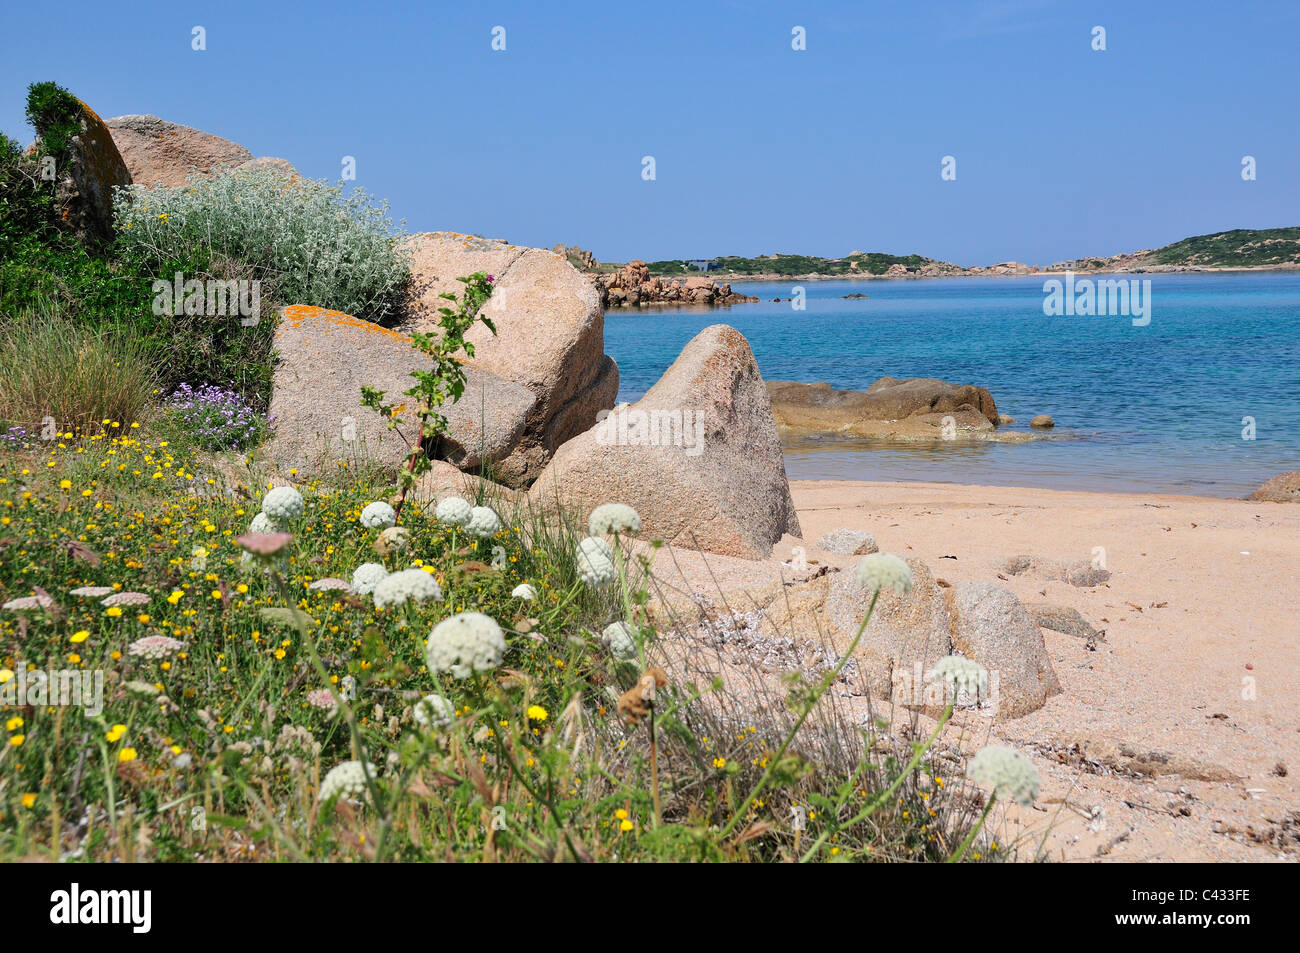 Tipica baia e spiaggia con rocce e fiori all'estremità nord dell'Isola di Maddalena, Arcipelago di Maddalena, Sardegna, Italia Foto Stock